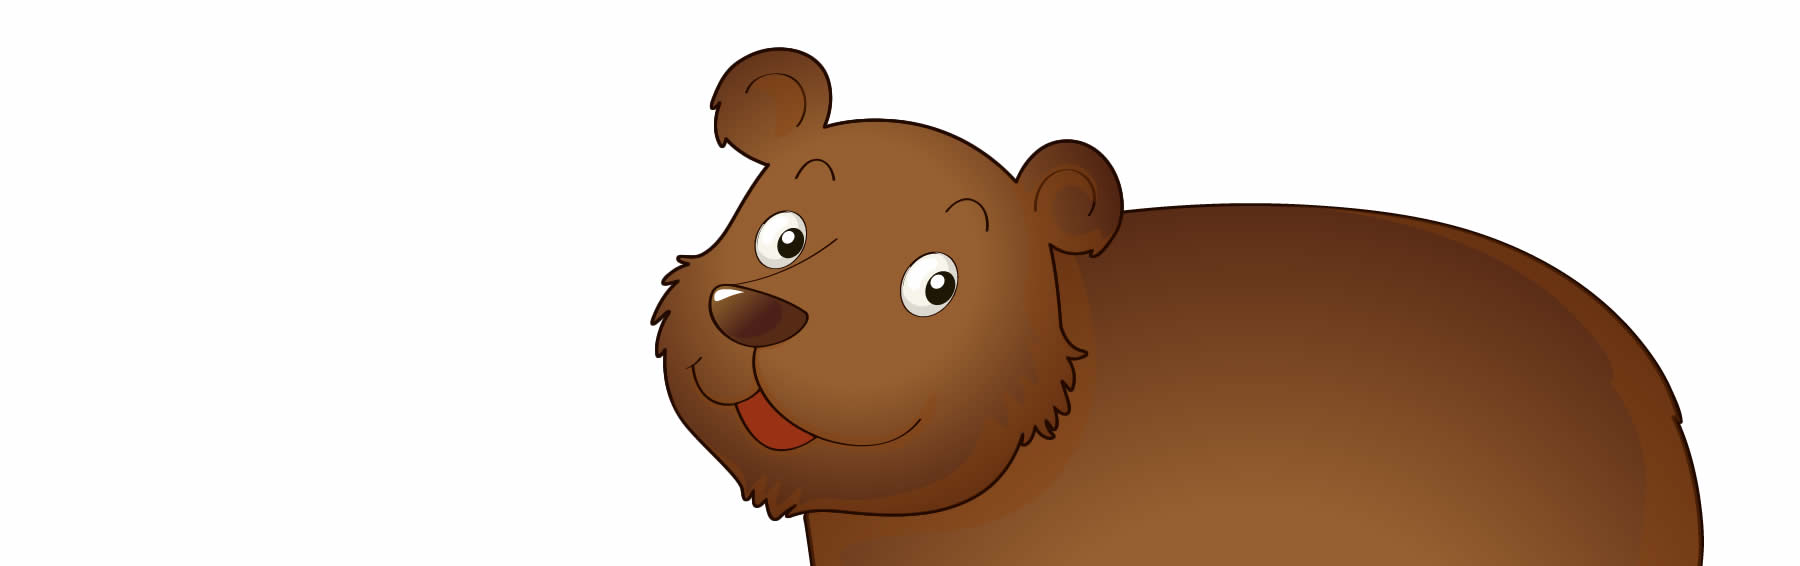 dibujos de osos para colorear